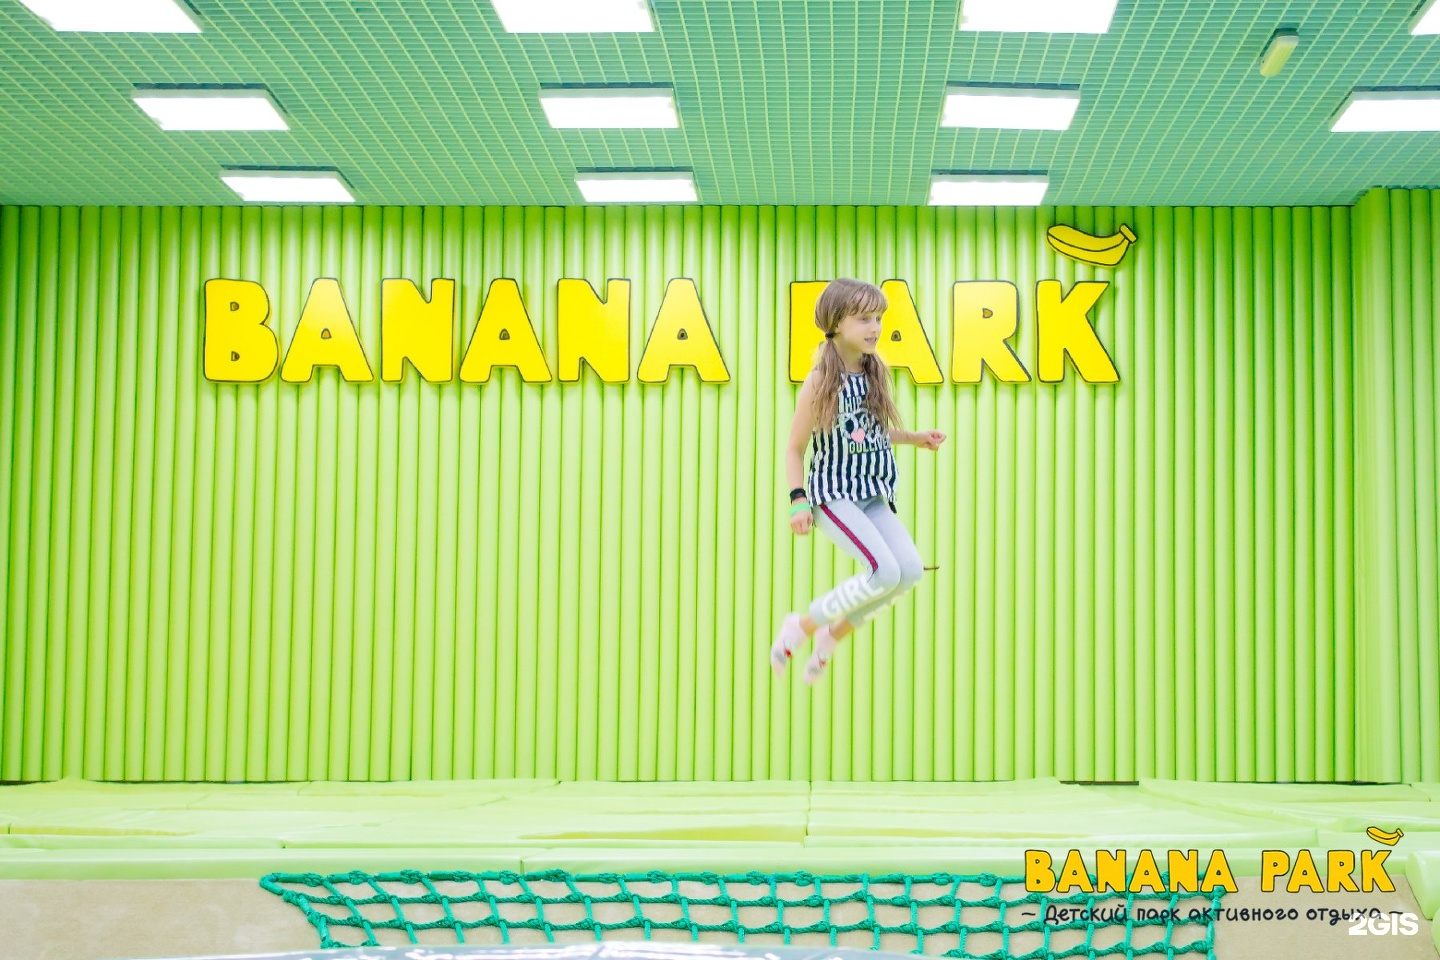 банана парк новосибирск роял парк